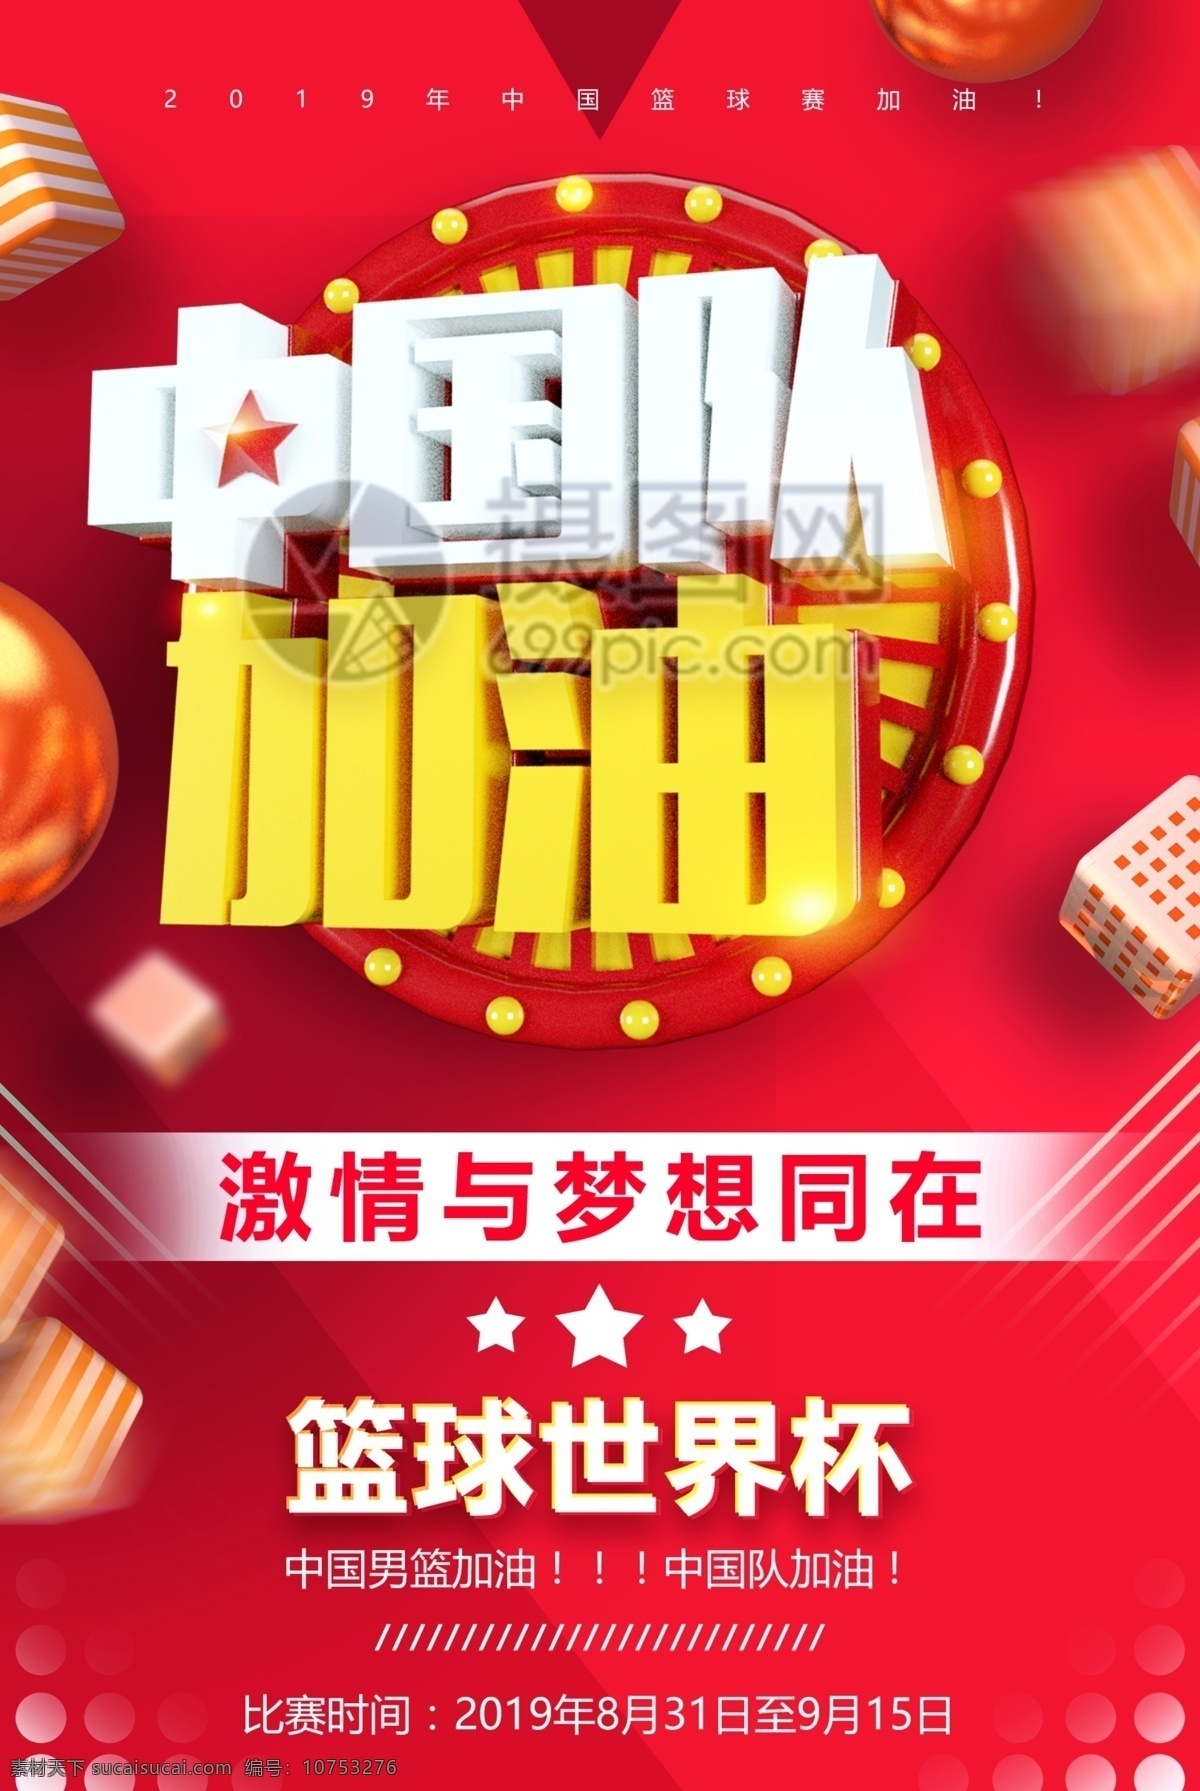 中国队 加油 篮球 世界杯 海报 中国队加油 篮球世界杯 加油中国队 比赛 立体字